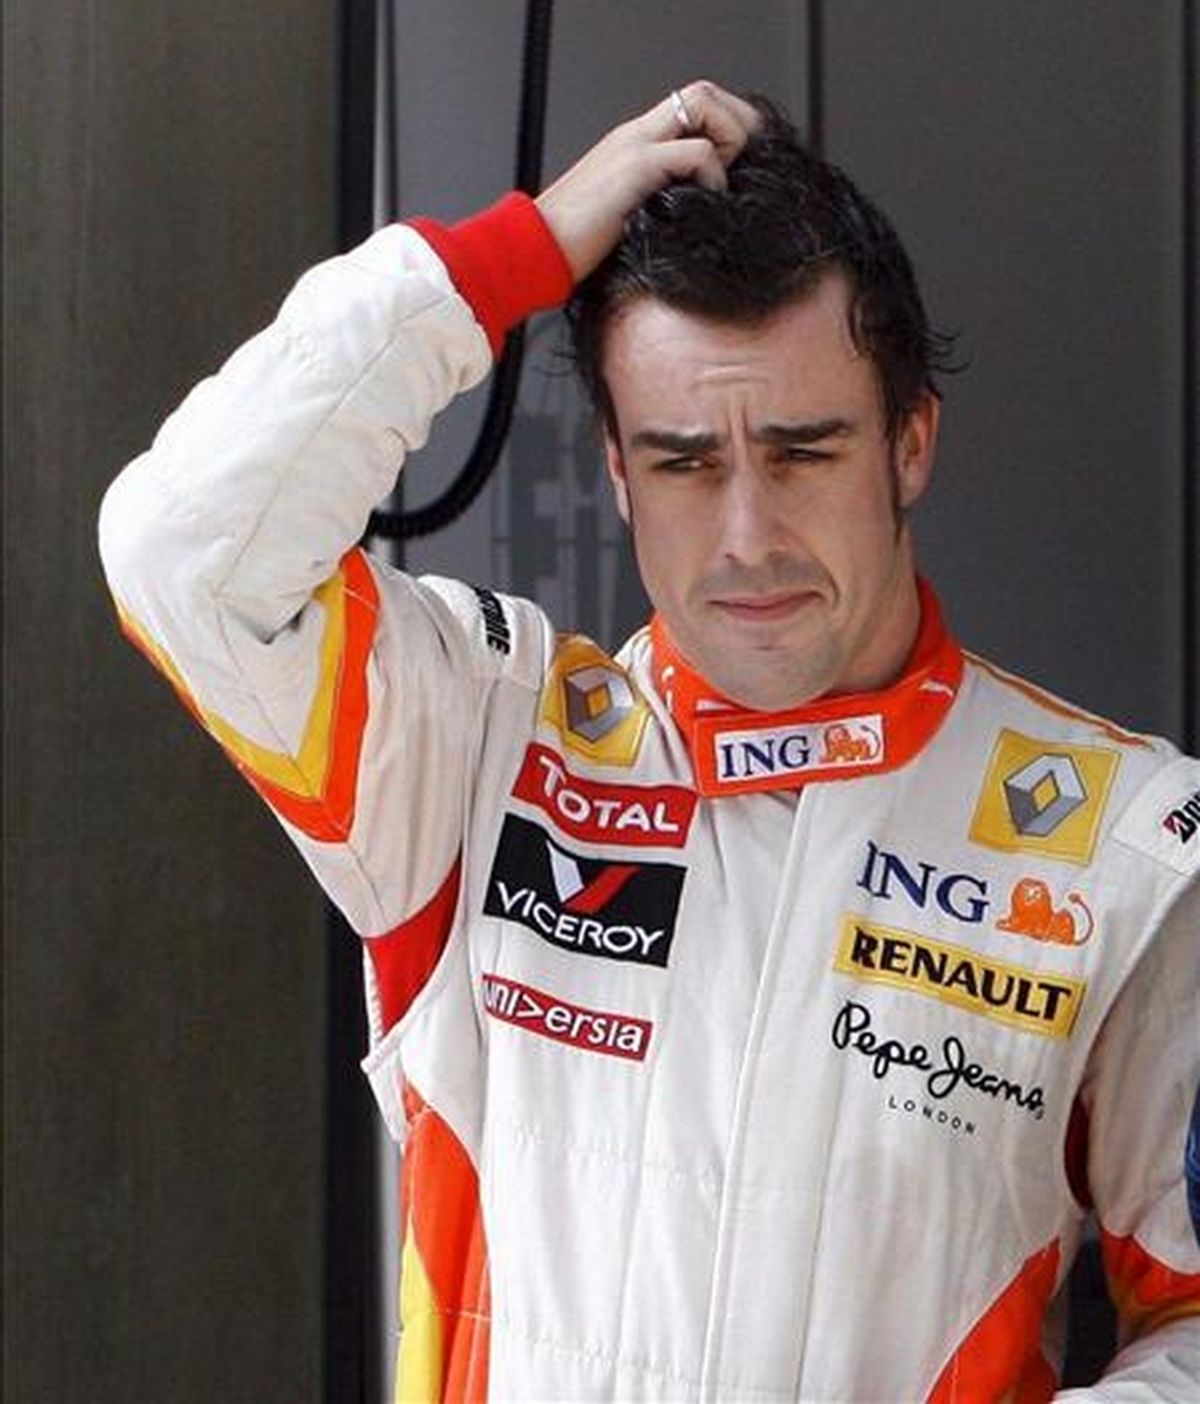 El piloto Fernando Alonso (Renault) ha finalizado en novena posición en el Gran Premio de China. En la imagen, Alonso ayer tras la sesión clasificatoria. EFE